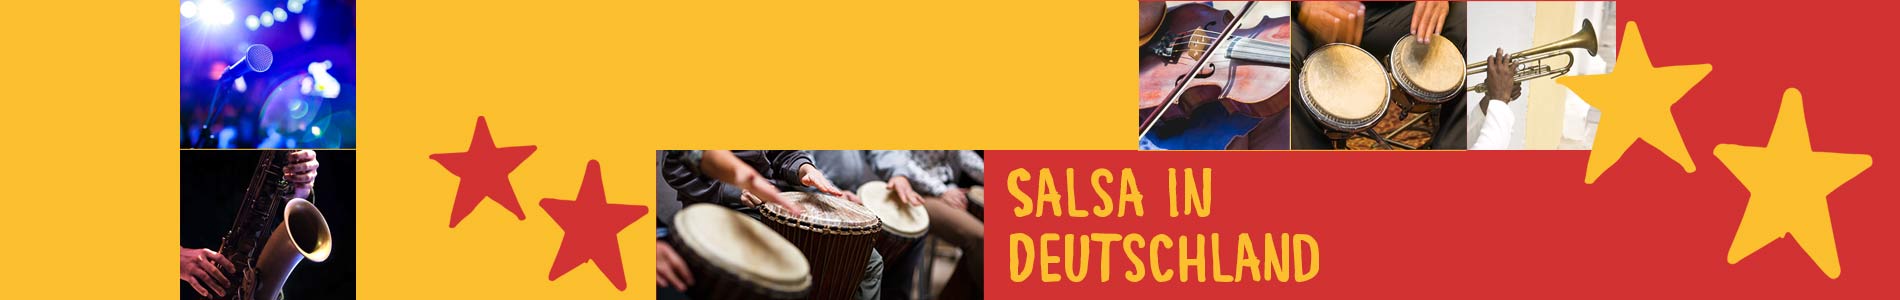 Salsa in Braunsbach – Salsa lernen und tanzen, Tanzkurse, Partys, Veranstaltungen